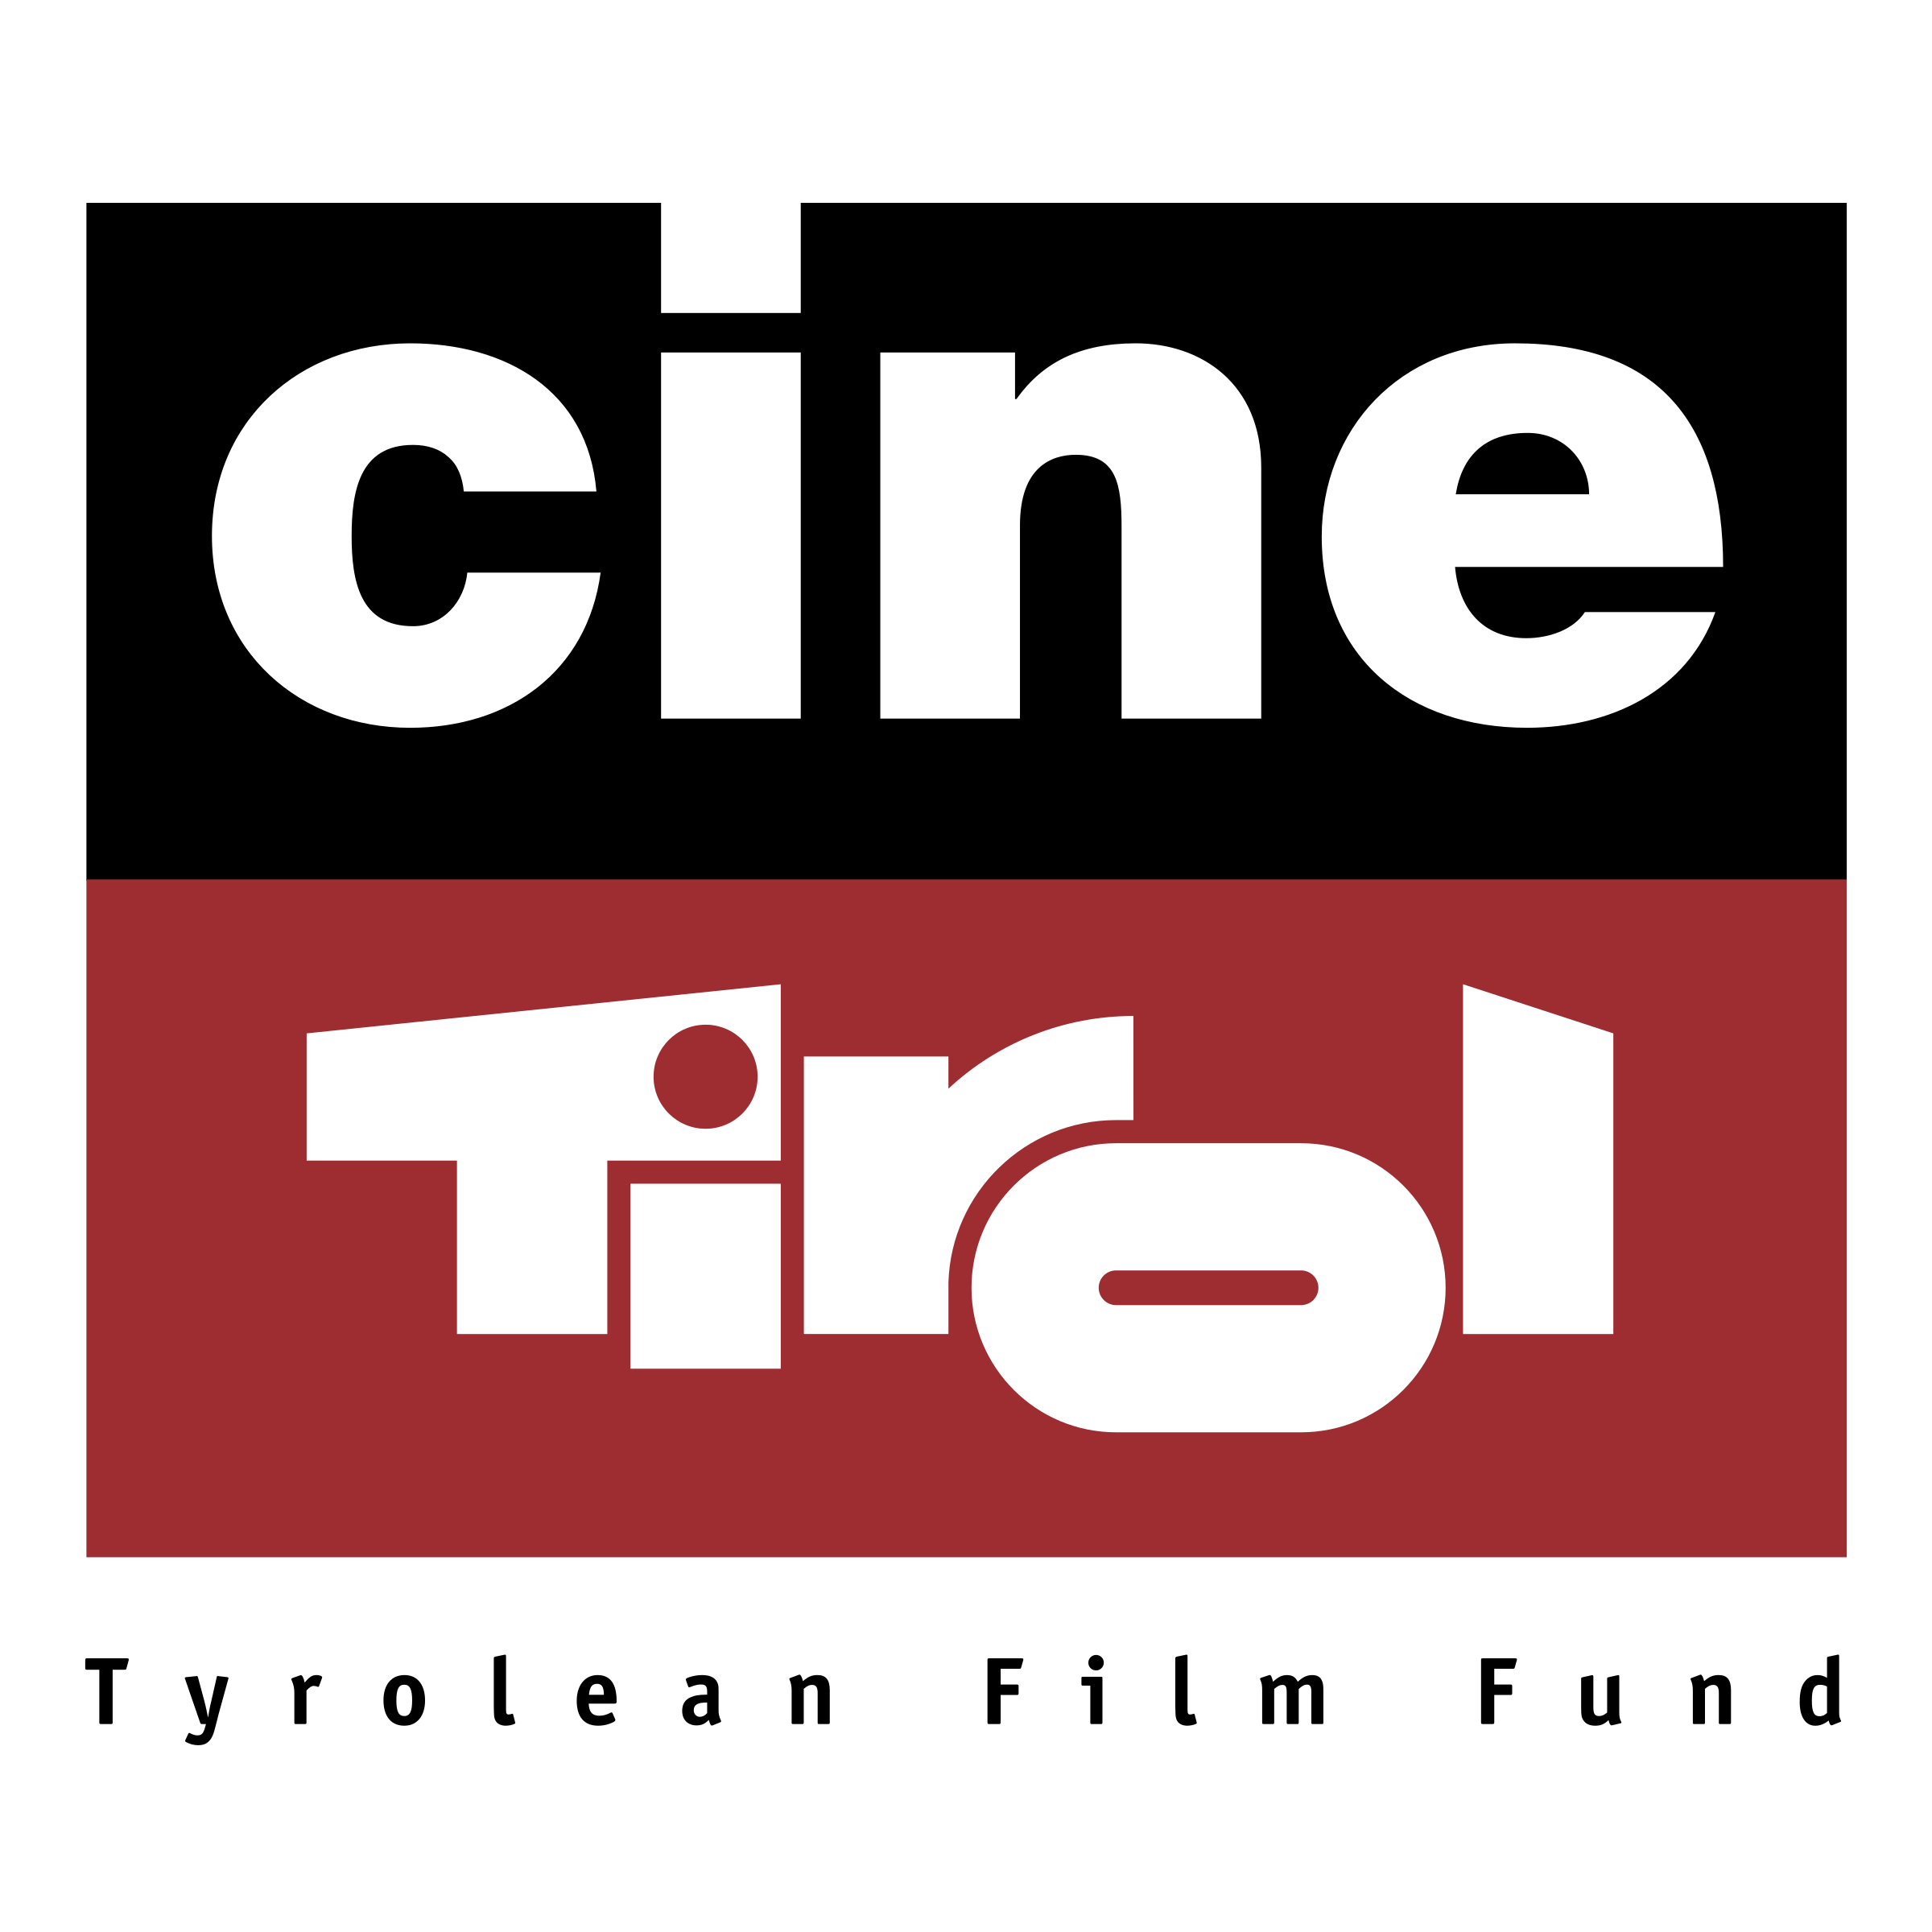 Cine Logo - Cine Tirol Logo PNG Transparent & SVG Vector